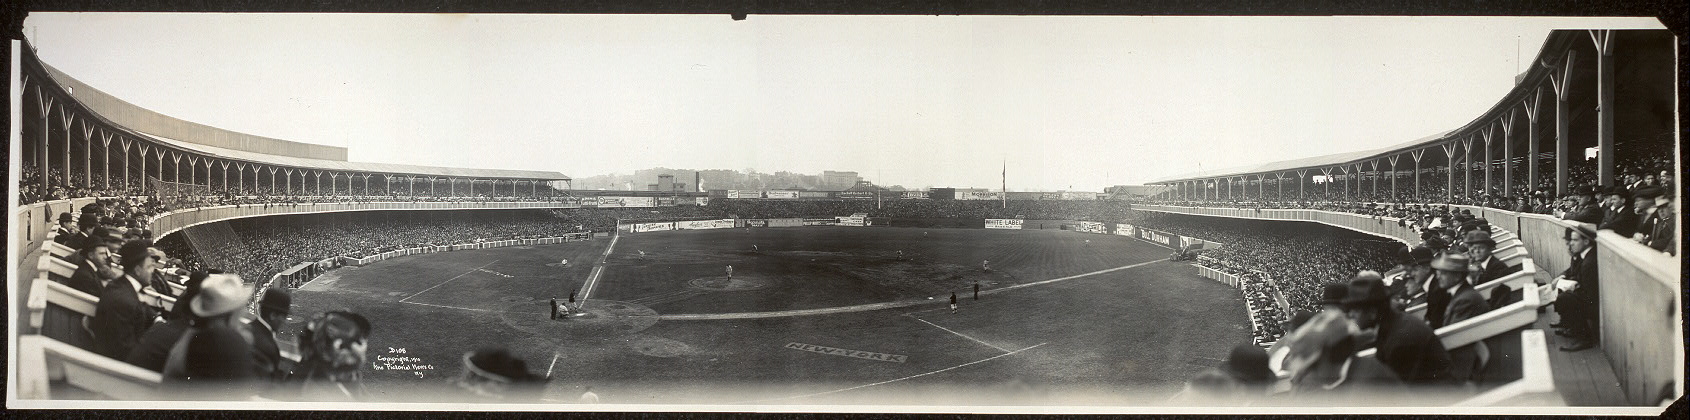 Panorama, baseball, Polo Grounds, New York, Oct. 13, 1910 [2].jpg